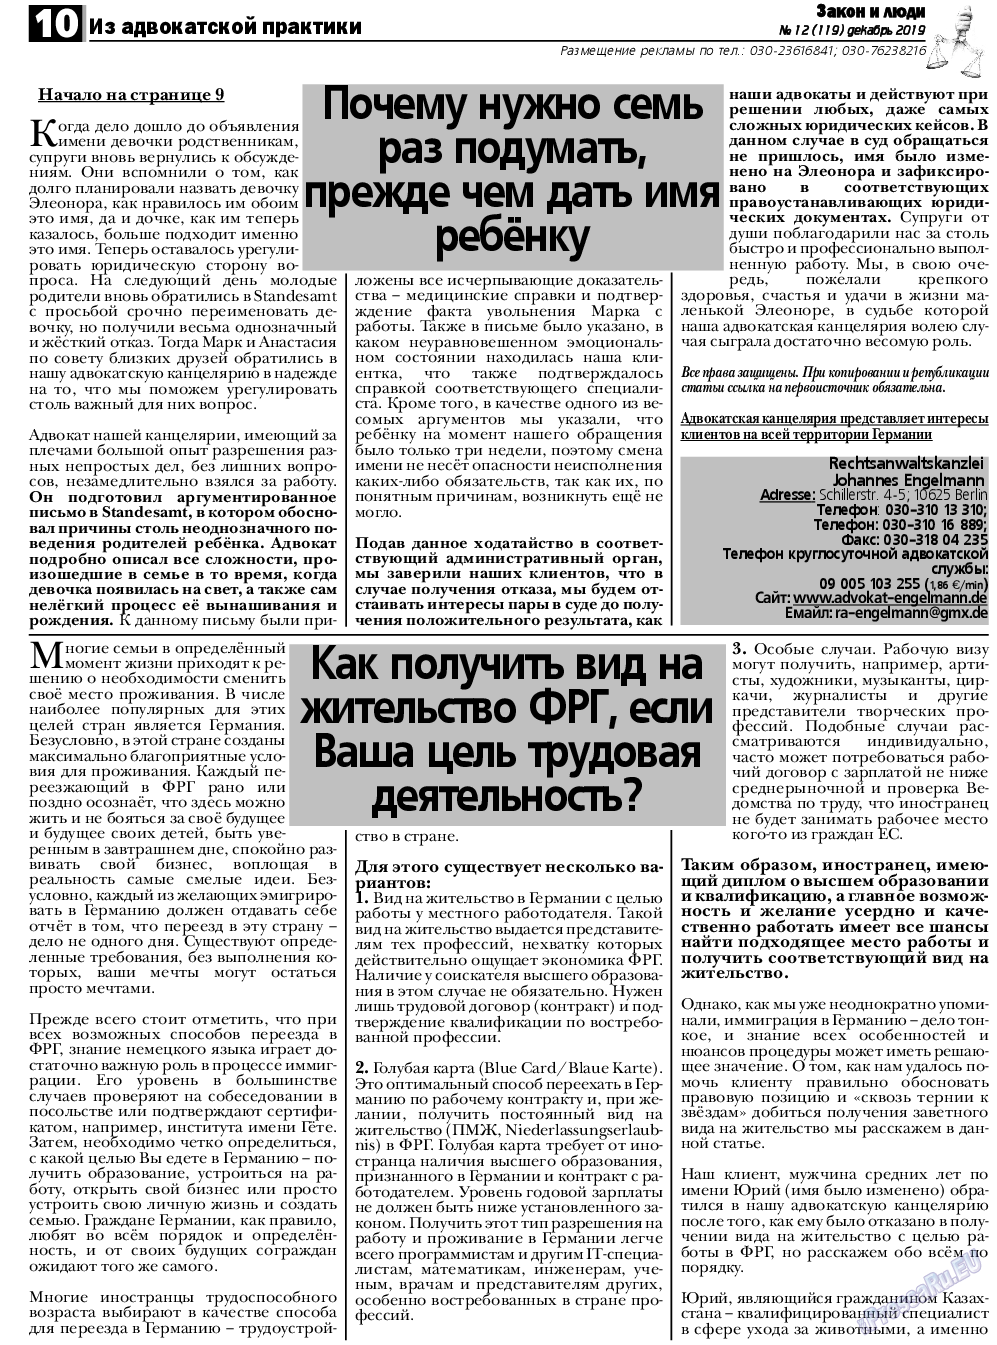 Закон и люди, газета. 2019 №12 стр.10